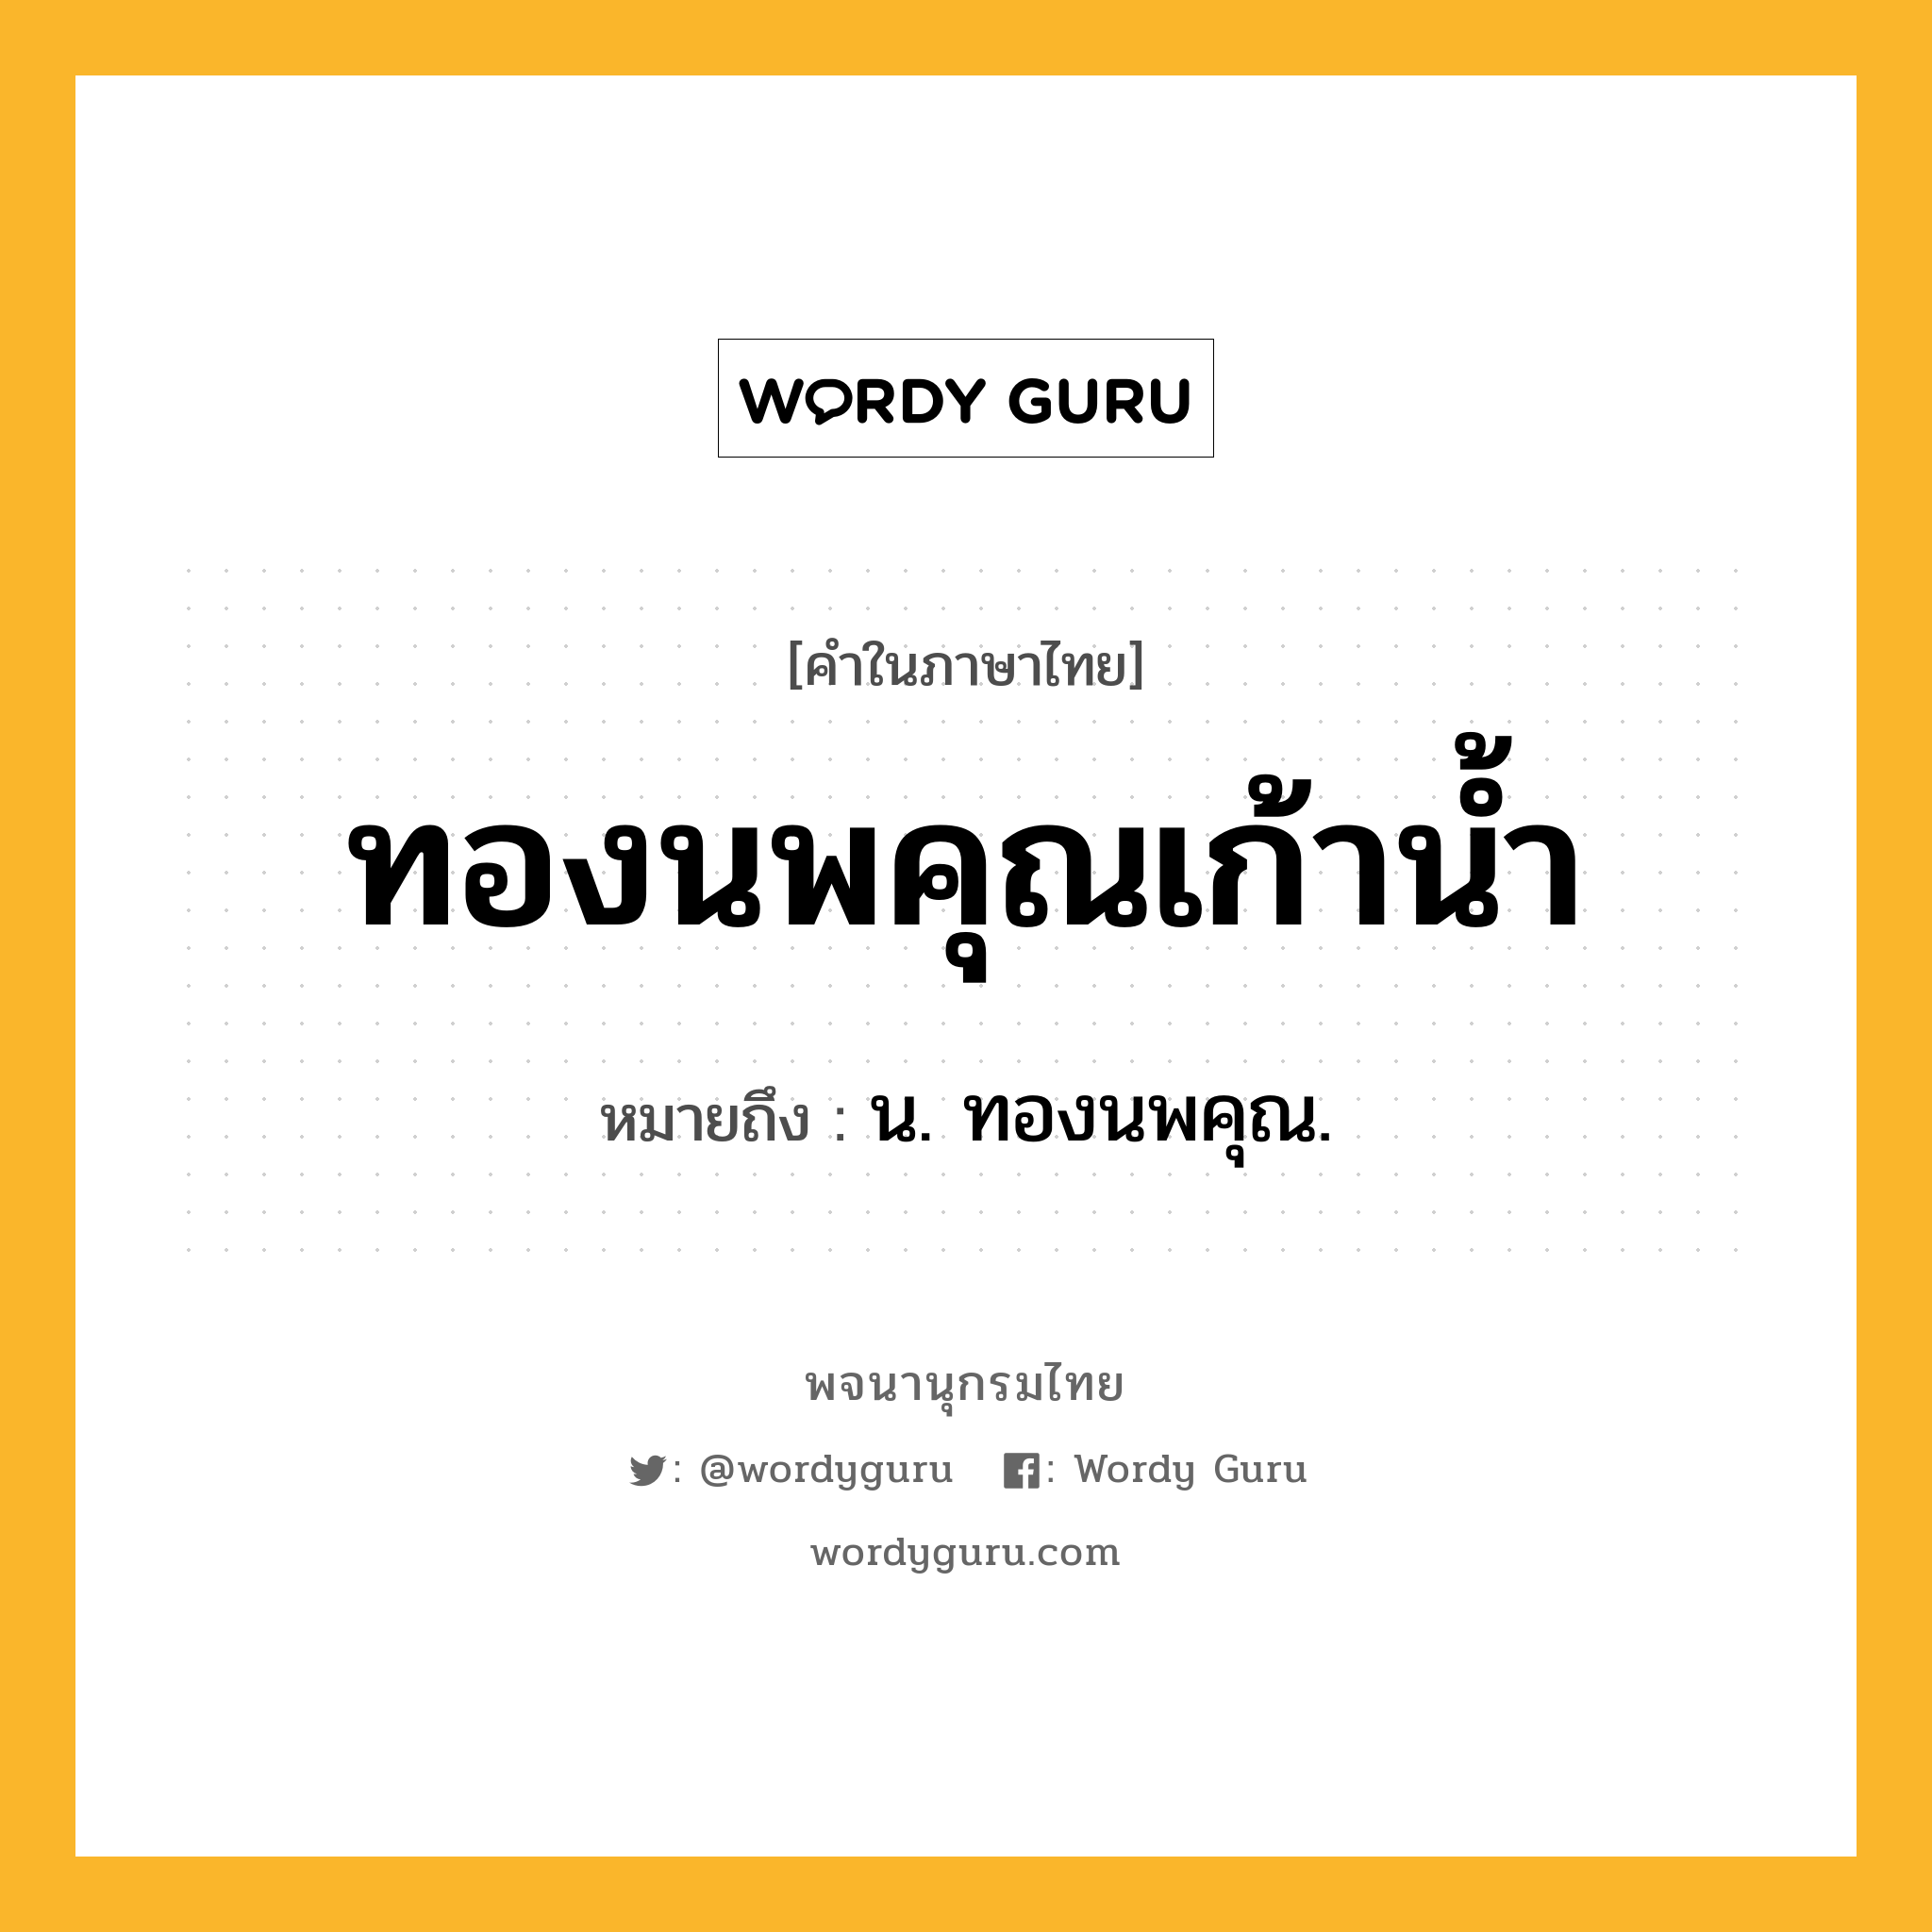 ทองนพคุณเก้าน้ำ ความหมาย หมายถึงอะไร?, คำในภาษาไทย ทองนพคุณเก้าน้ำ หมายถึง น. ทองนพคุณ.